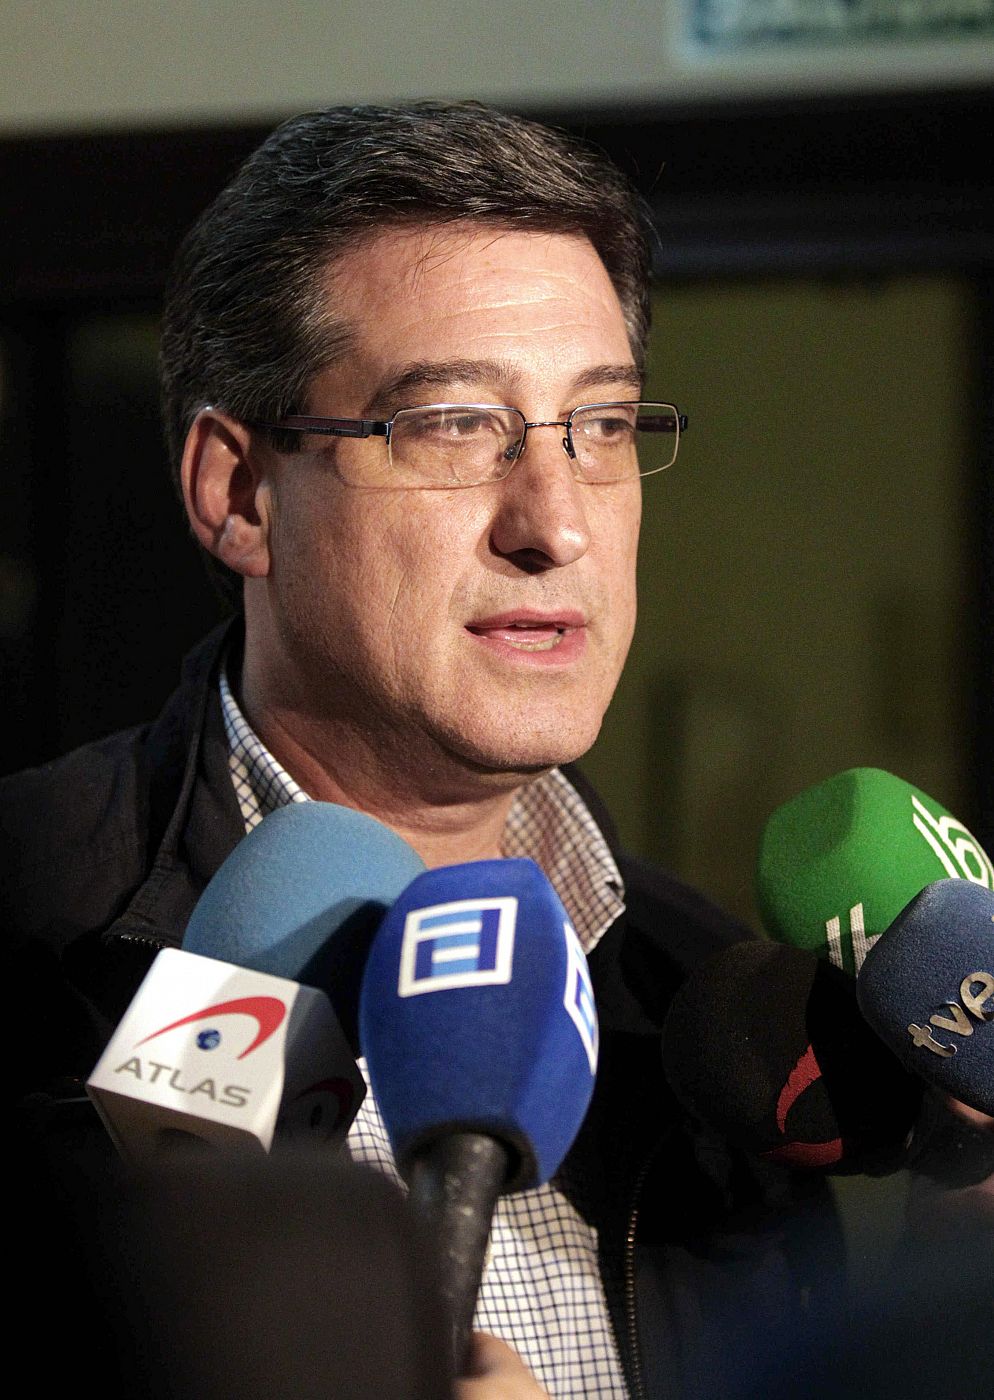 El diputado regional por Asturias, Ignacio Prendes, atiende a los medios de comunicación tras la asamblea de afiliados de UPyD Asturias.